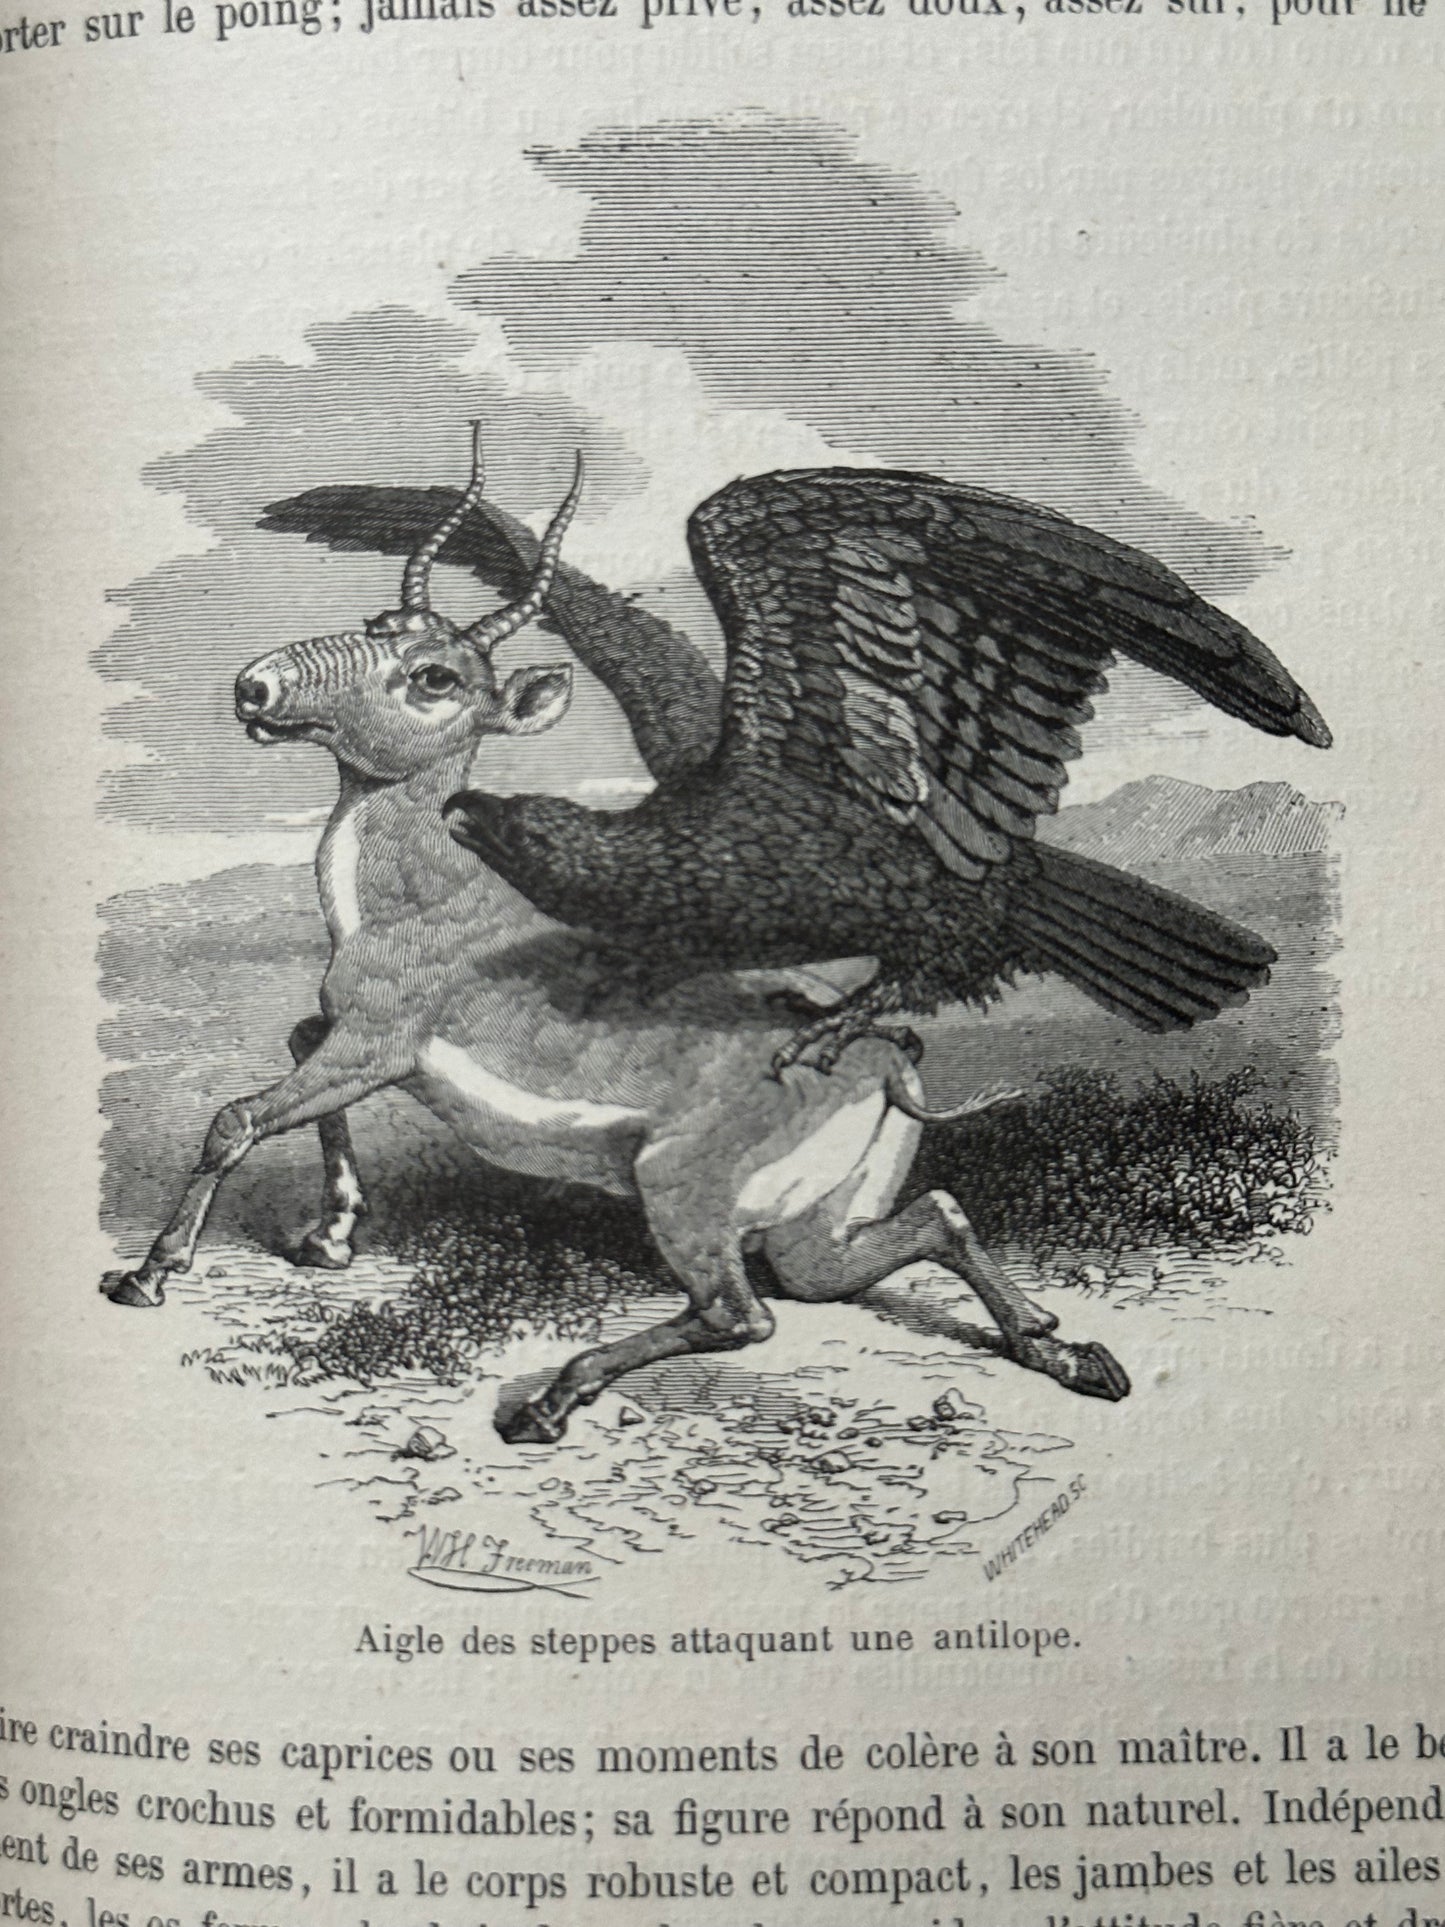 1883 Natural History by Buffon